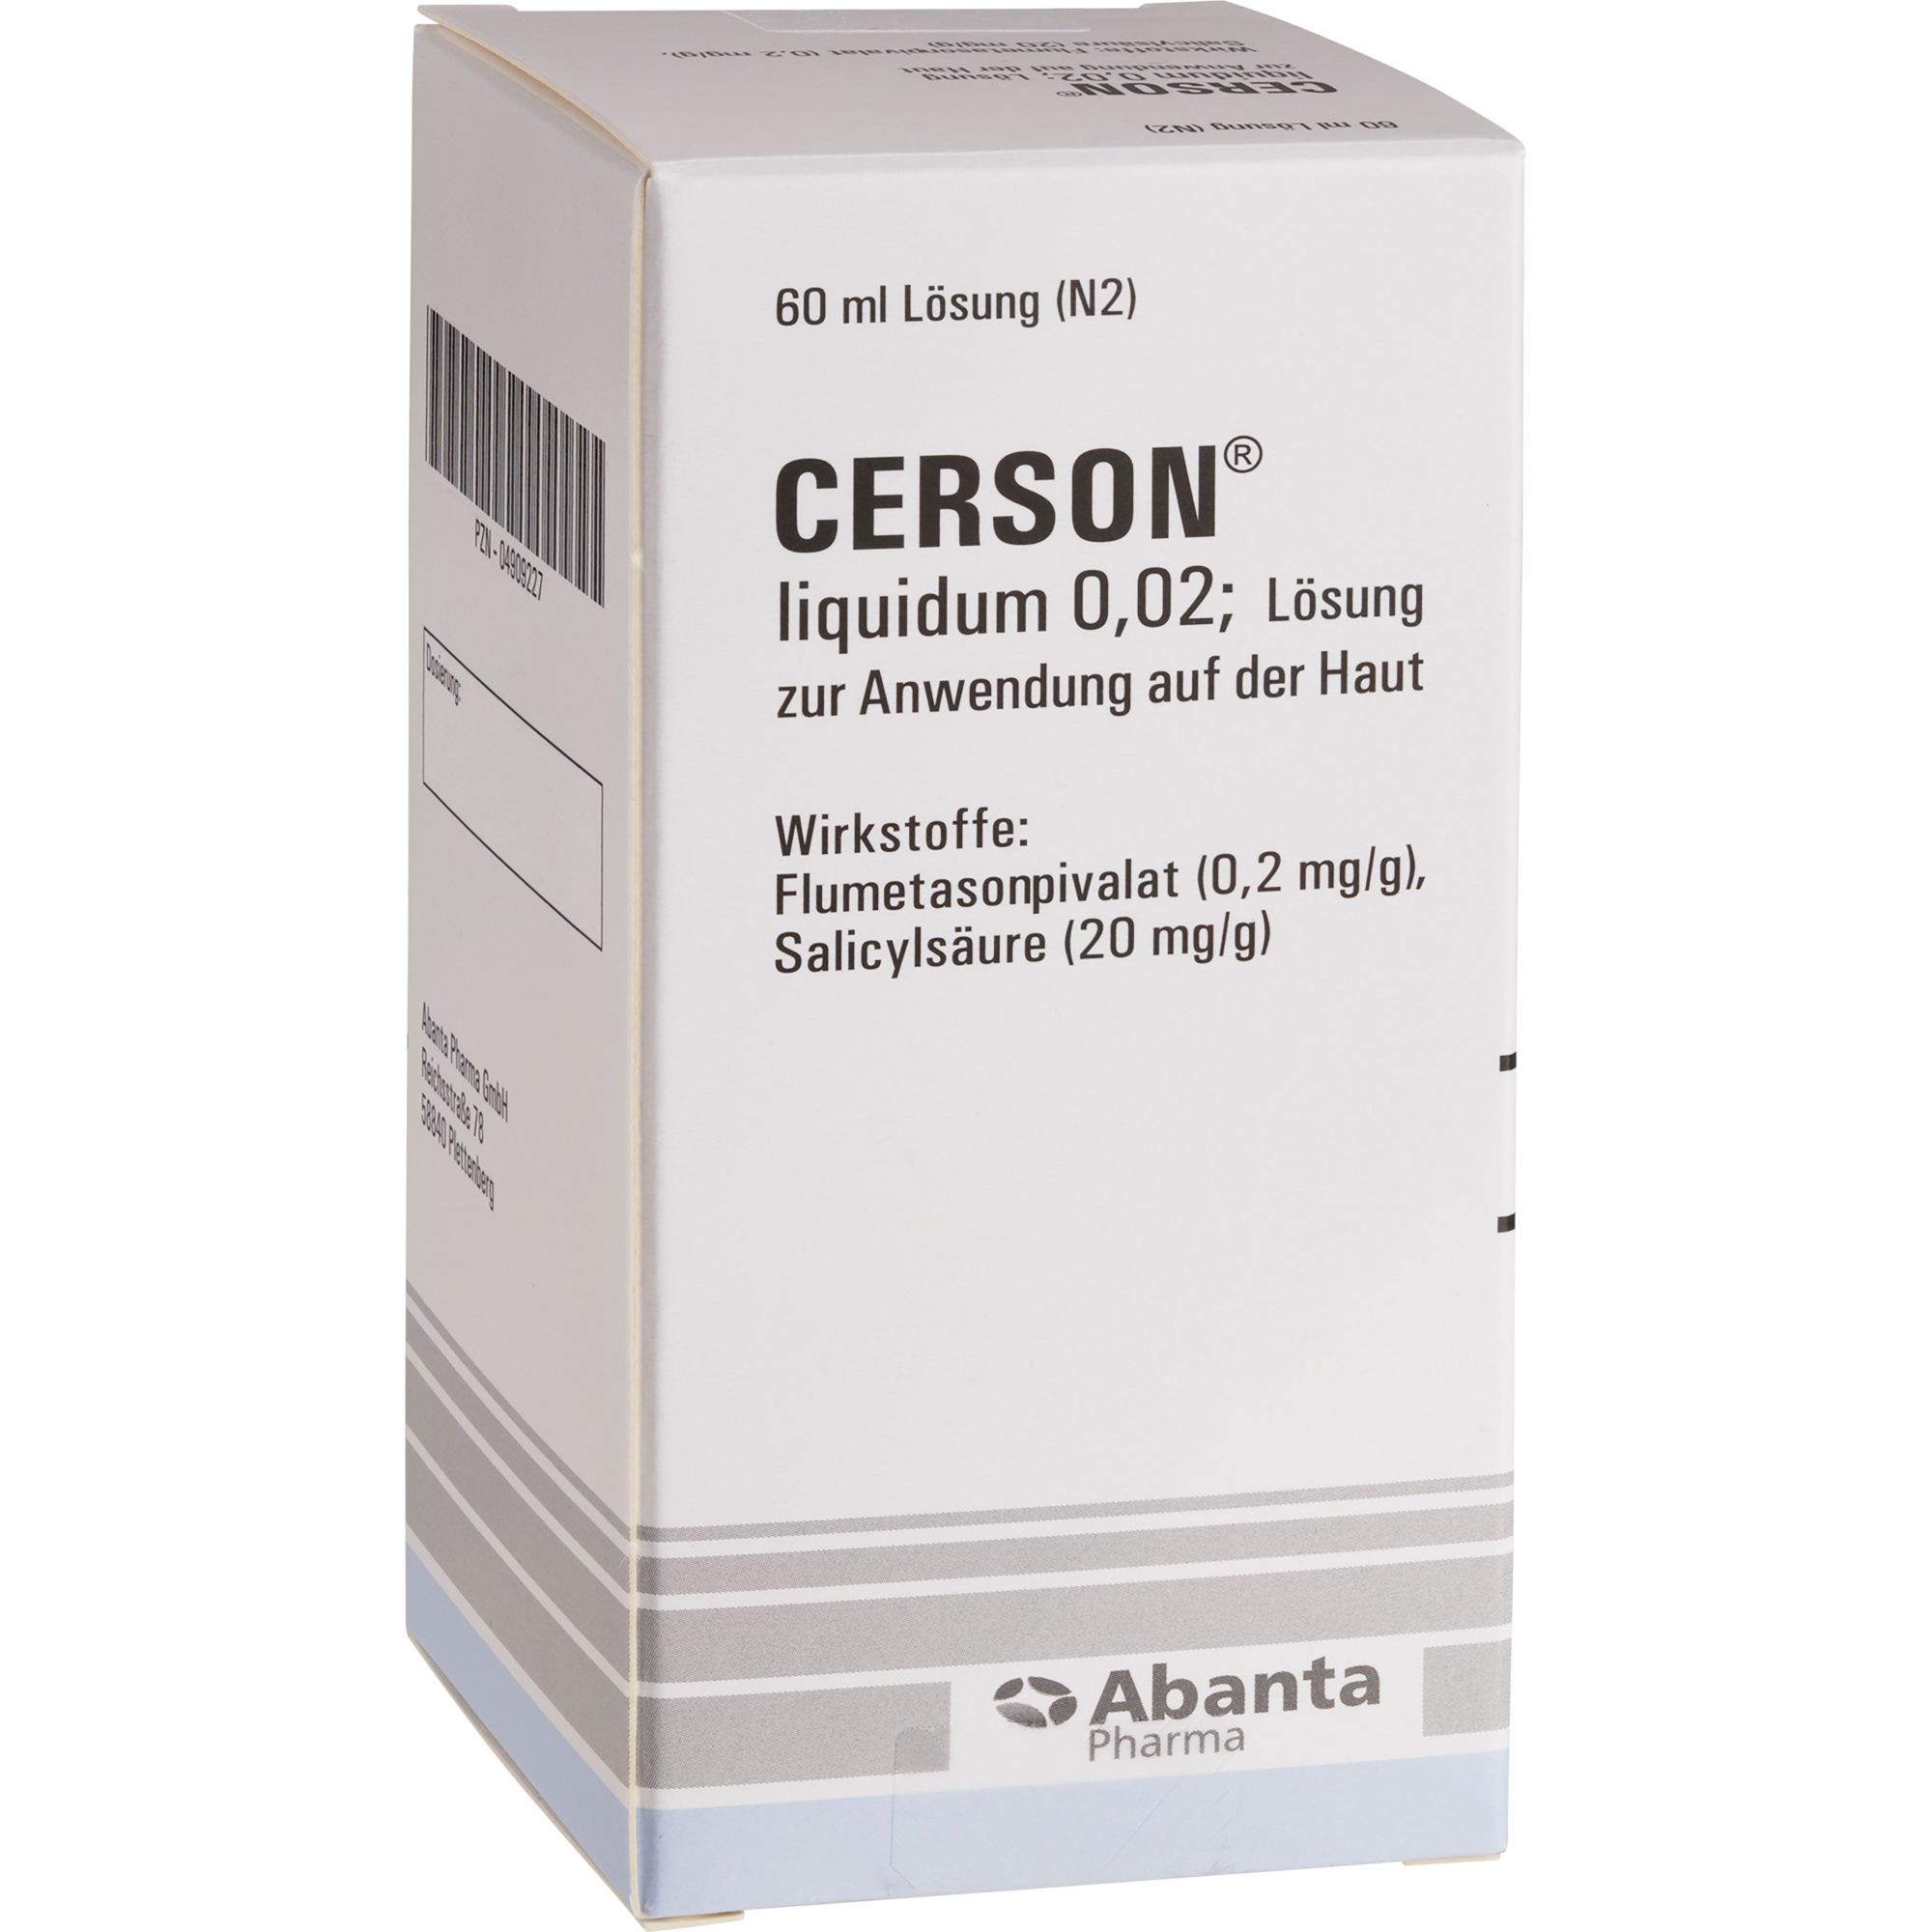 CERSON® liquidum 0,02